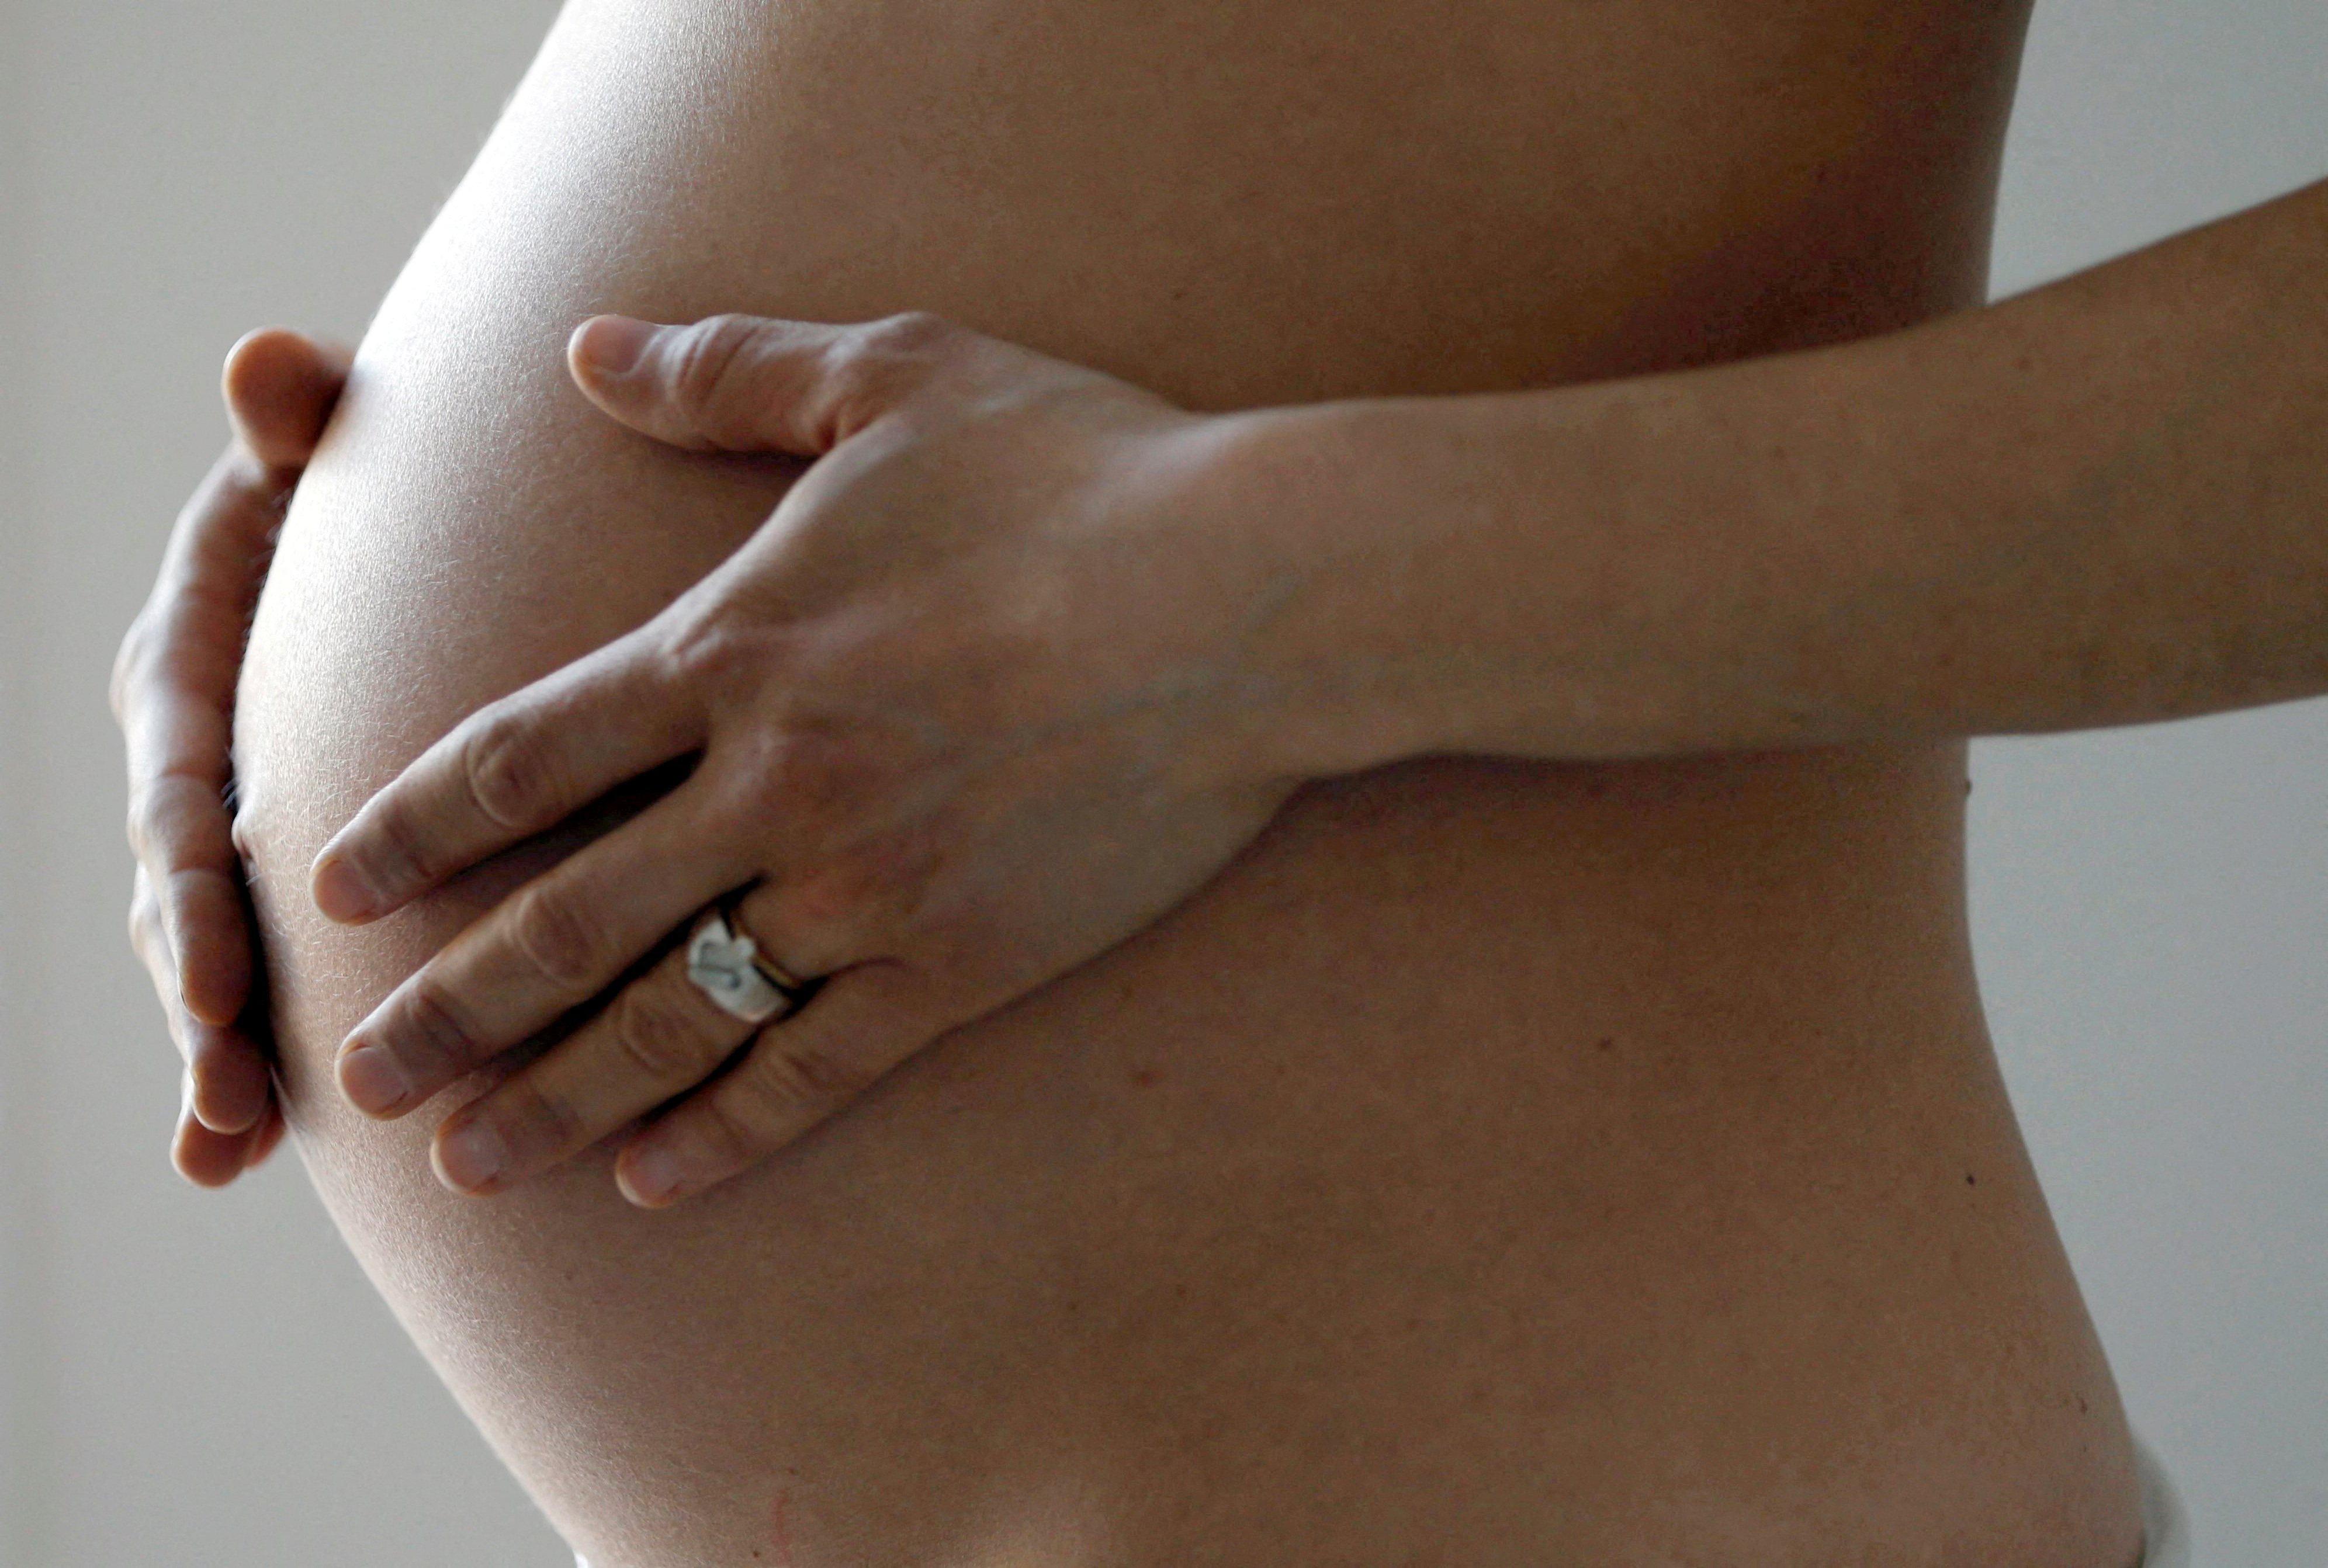 國人多認為懷孕期間應避免服藥，但研究證實，懷孕早期使用安眠藥與早產、死產無顯著關係。圖為懷孕示意圖。本報資料照